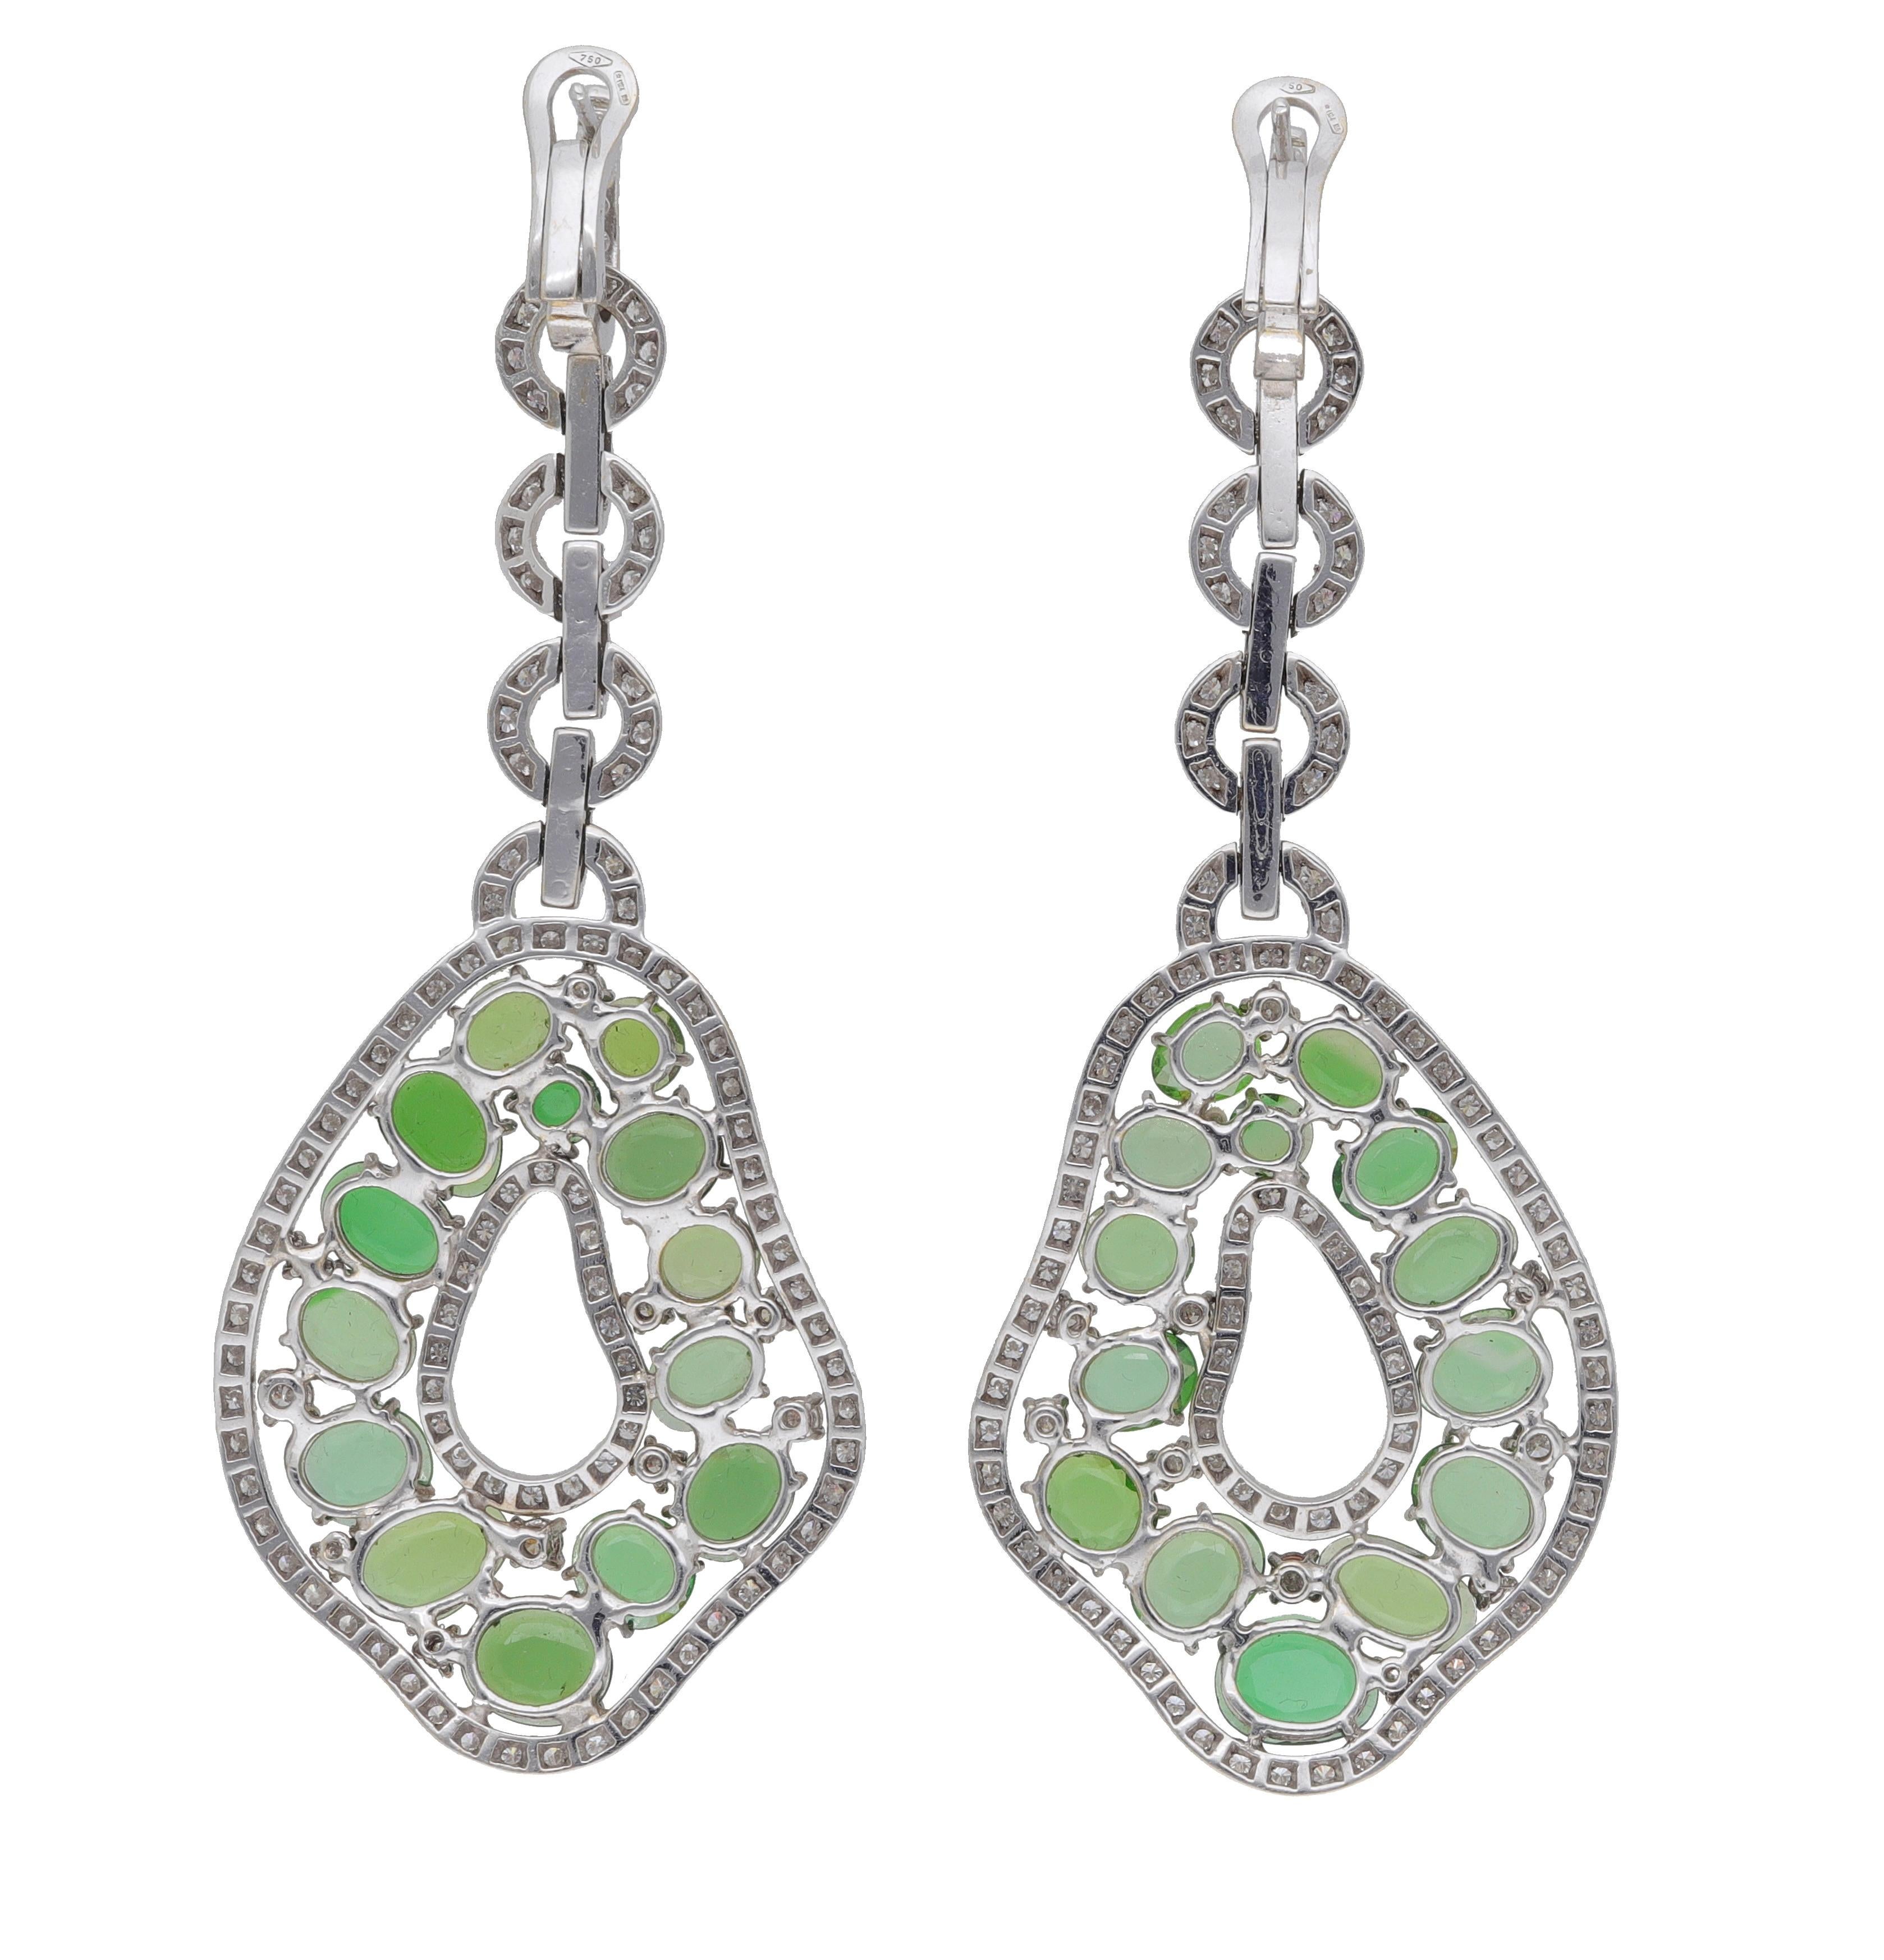 Fraleoni 18 Kt. White Gold Diamonds Green Tourmalines Earrings For Sale 1